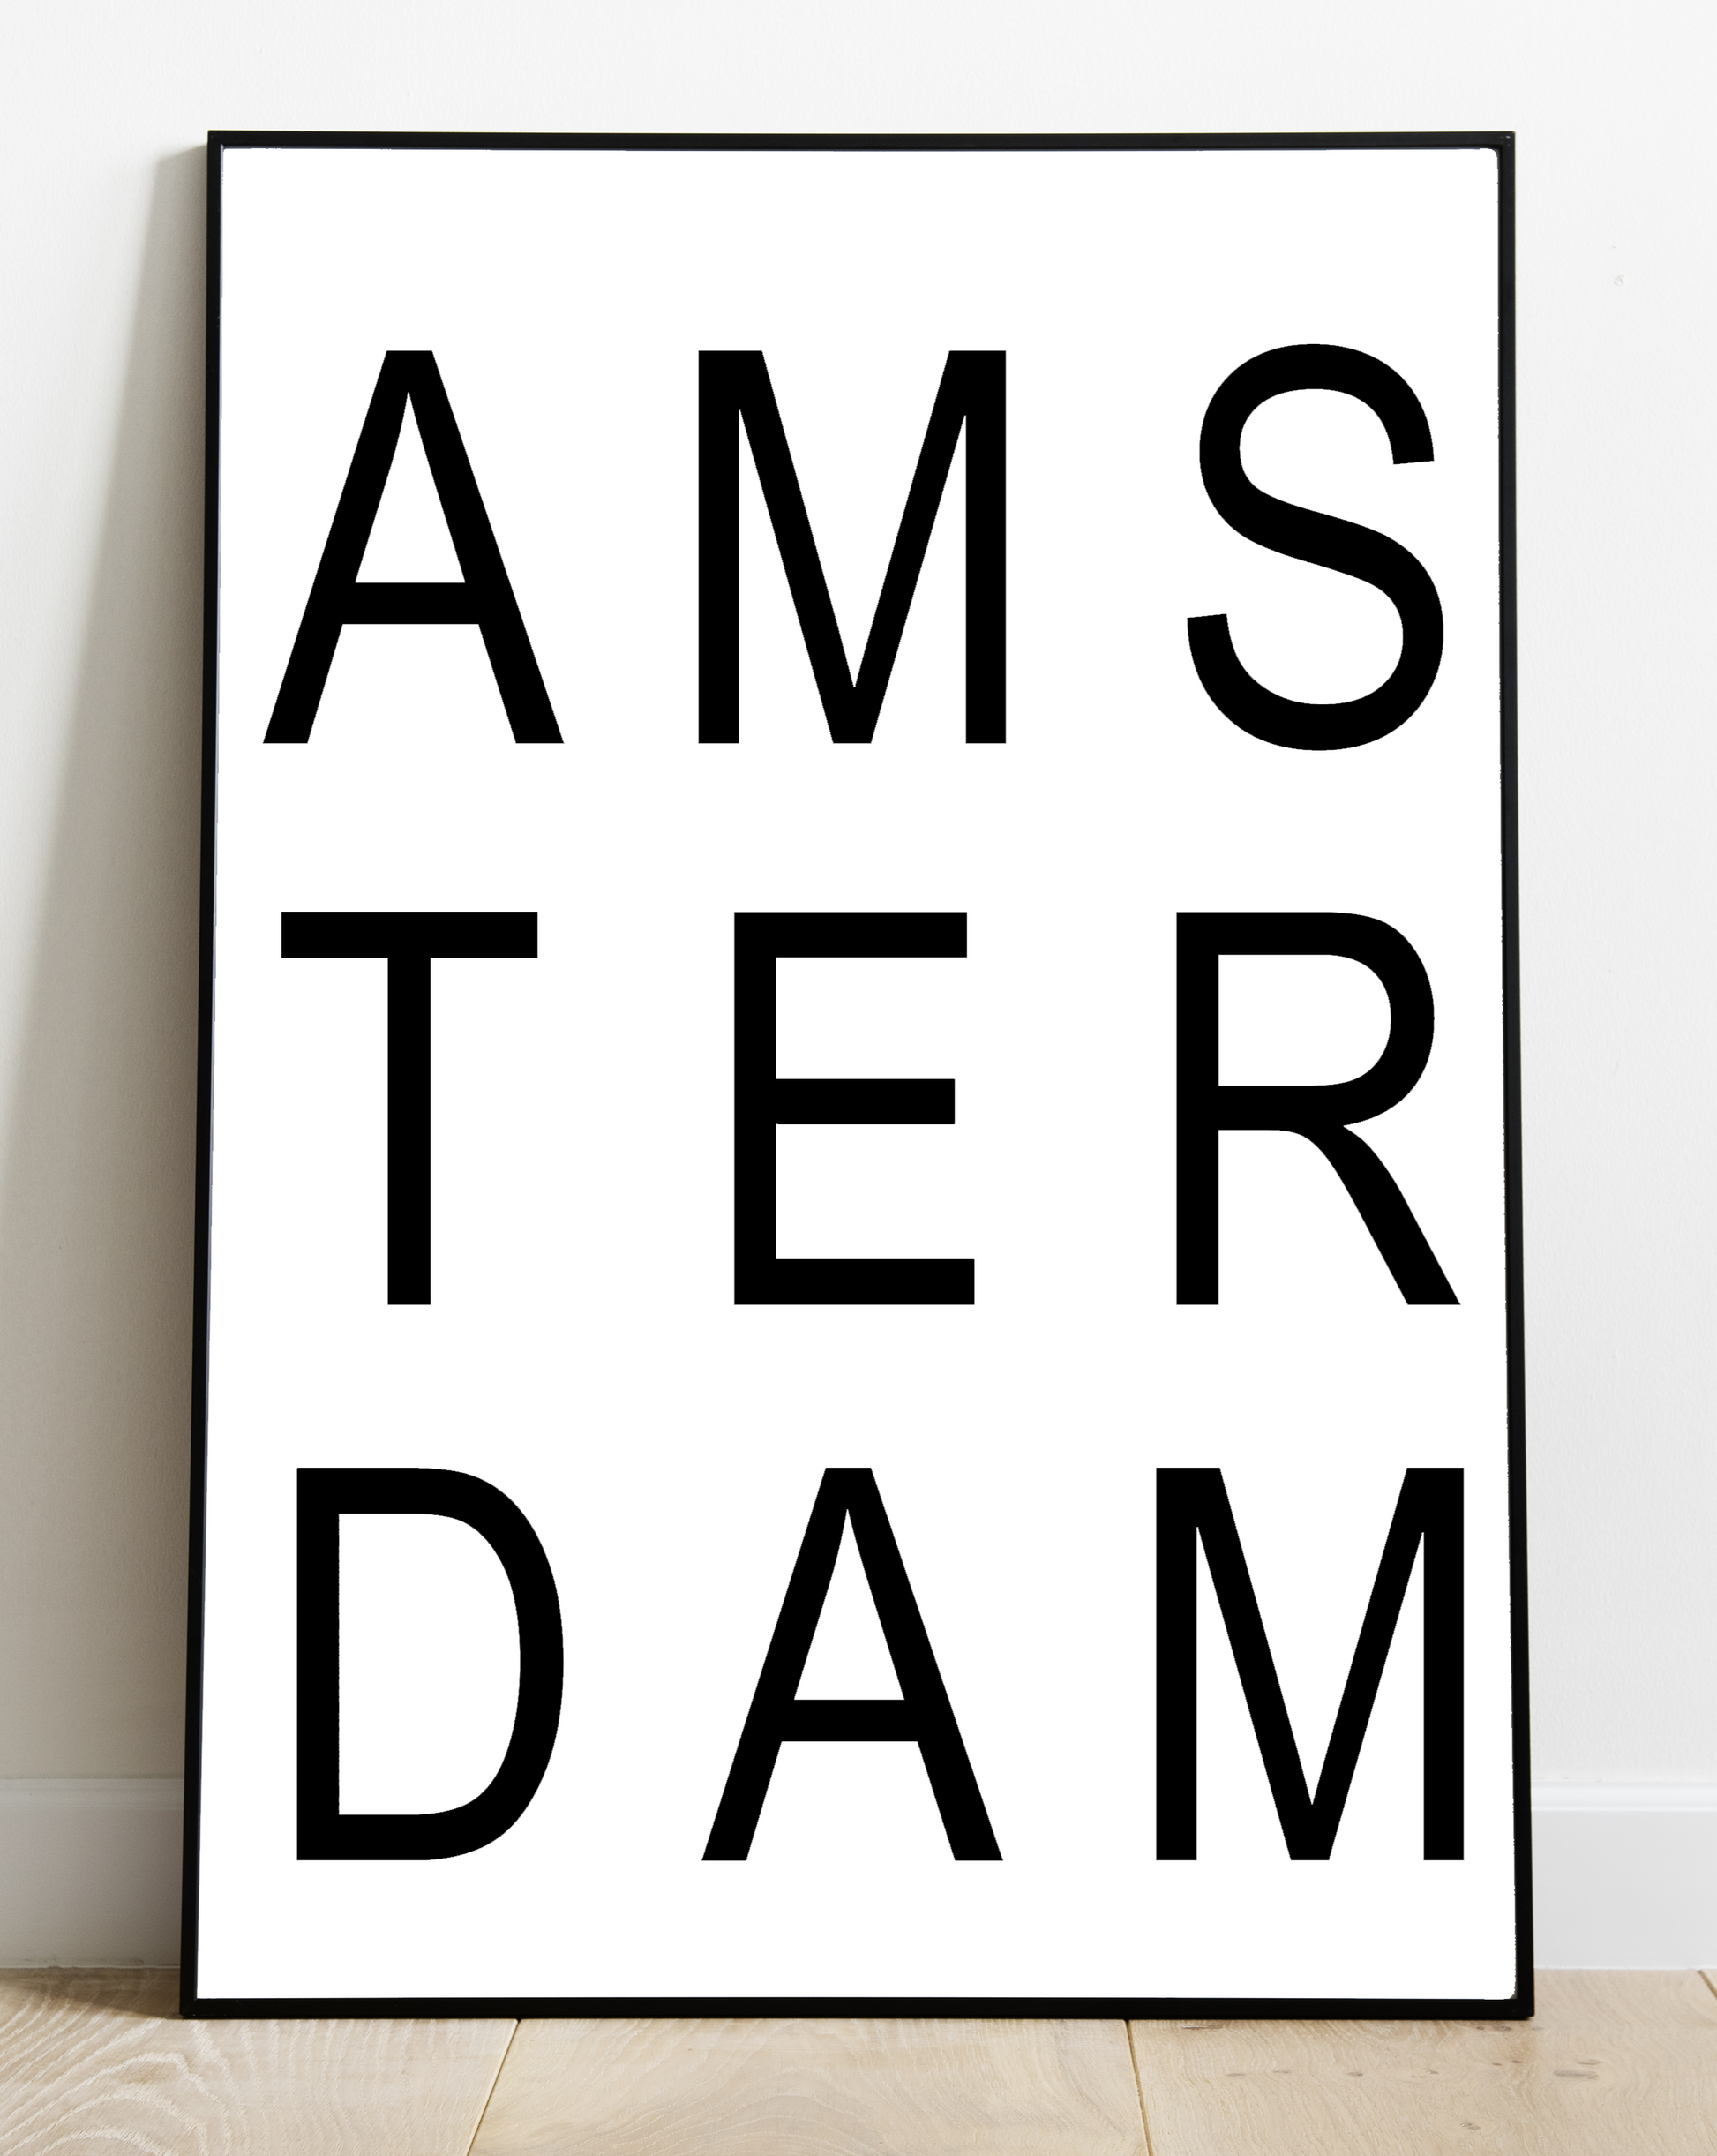 huisjevansanne poster zwart wit met tekst amsterdam